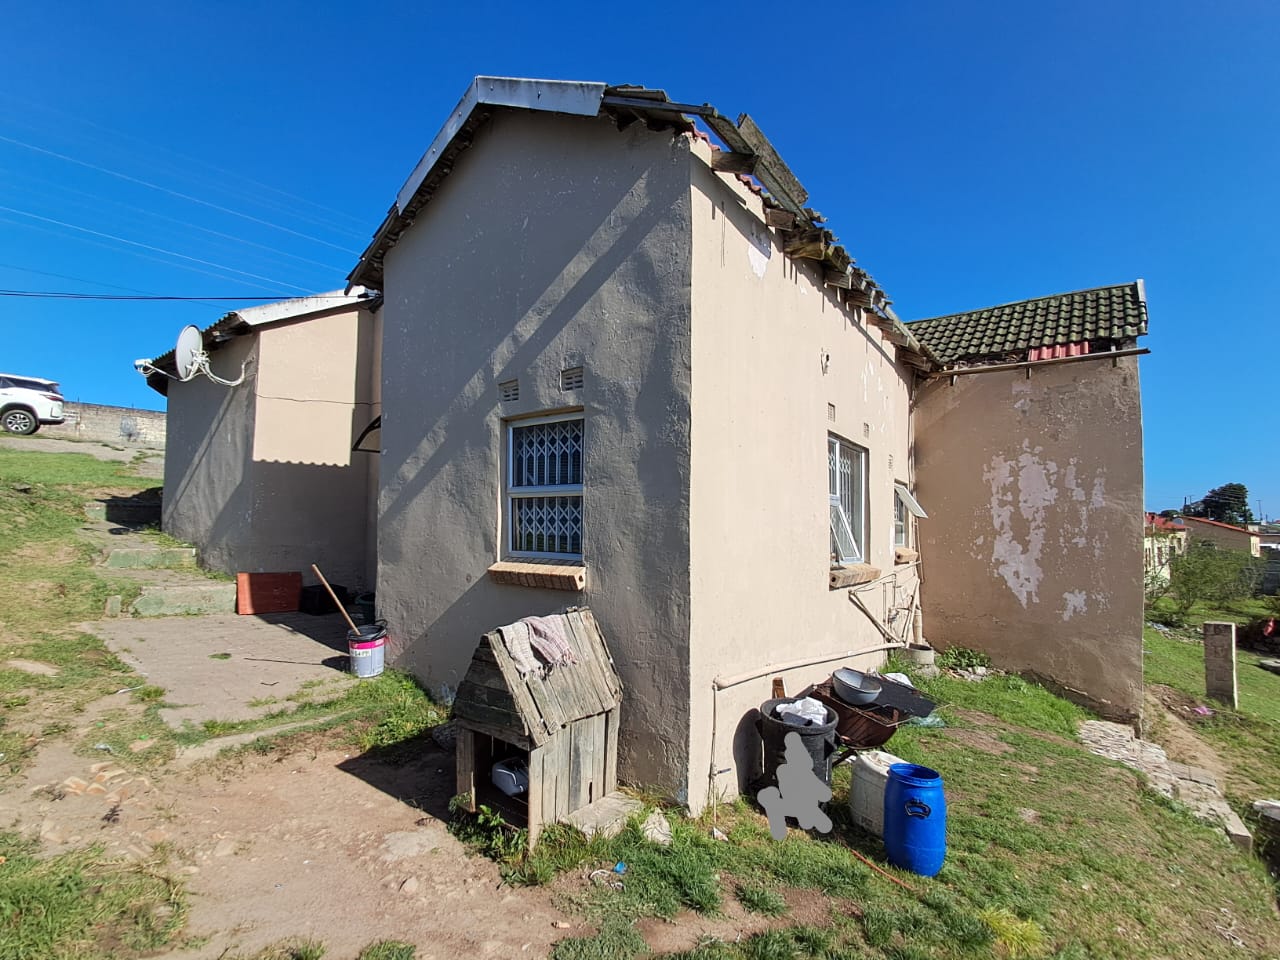 3 Bedroom Property for Sale in Mdantsane Eastern Cape